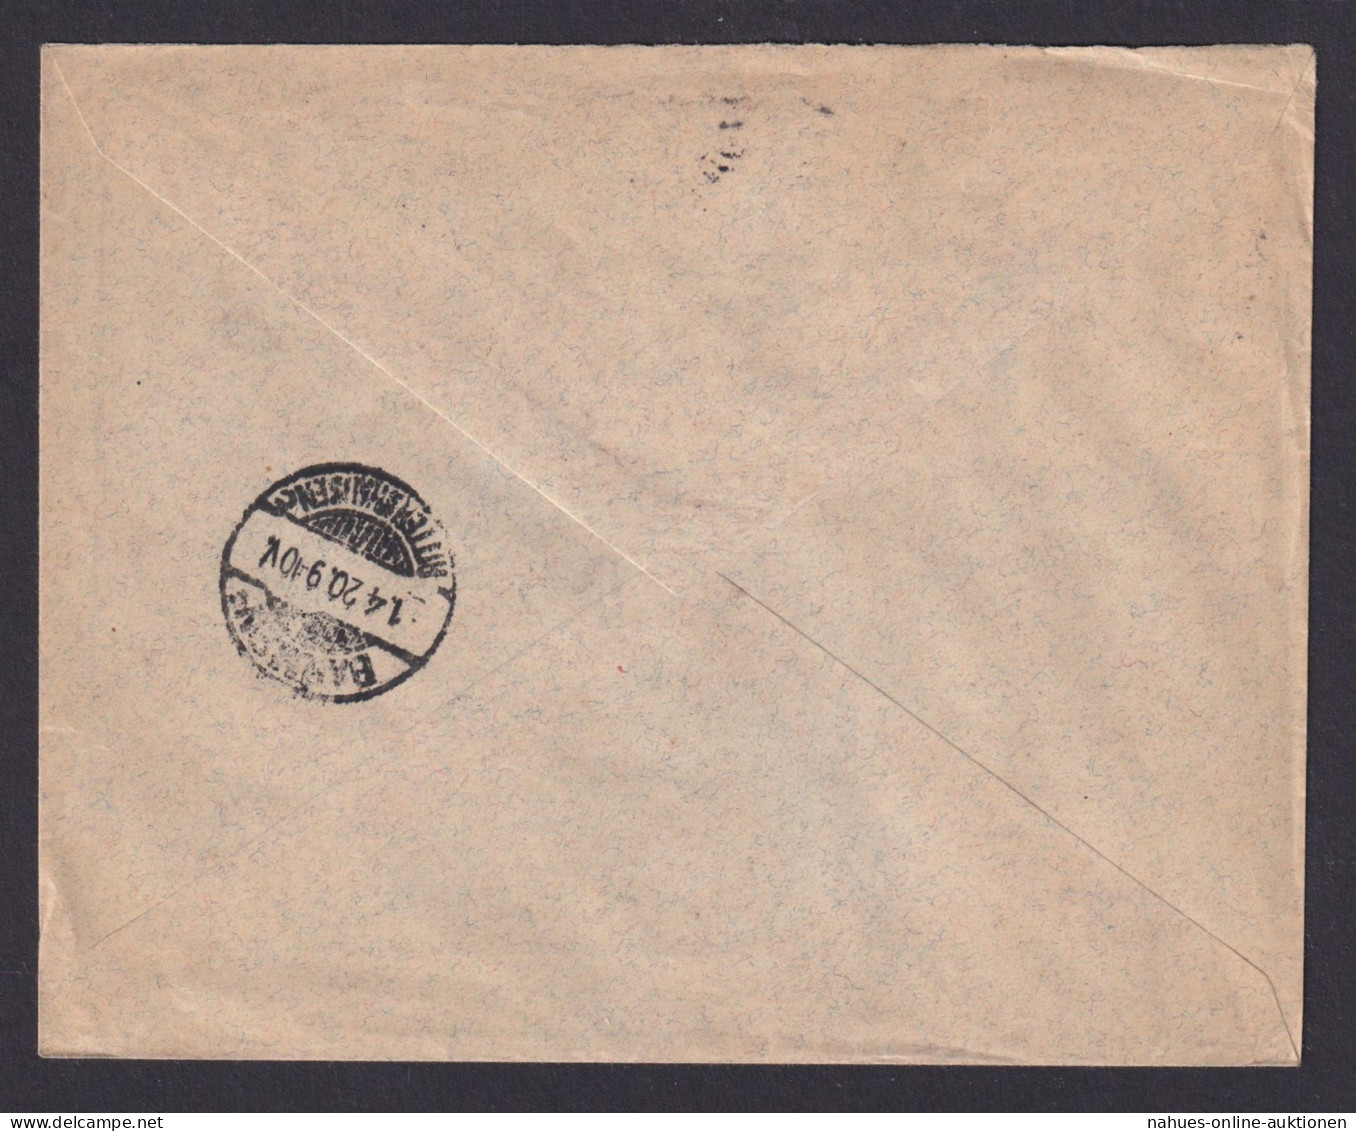 Briefmarken Ungarn R Brief Budapest Wuppertal Barmen Rittershausen 26.3.1920 - Storia Postale